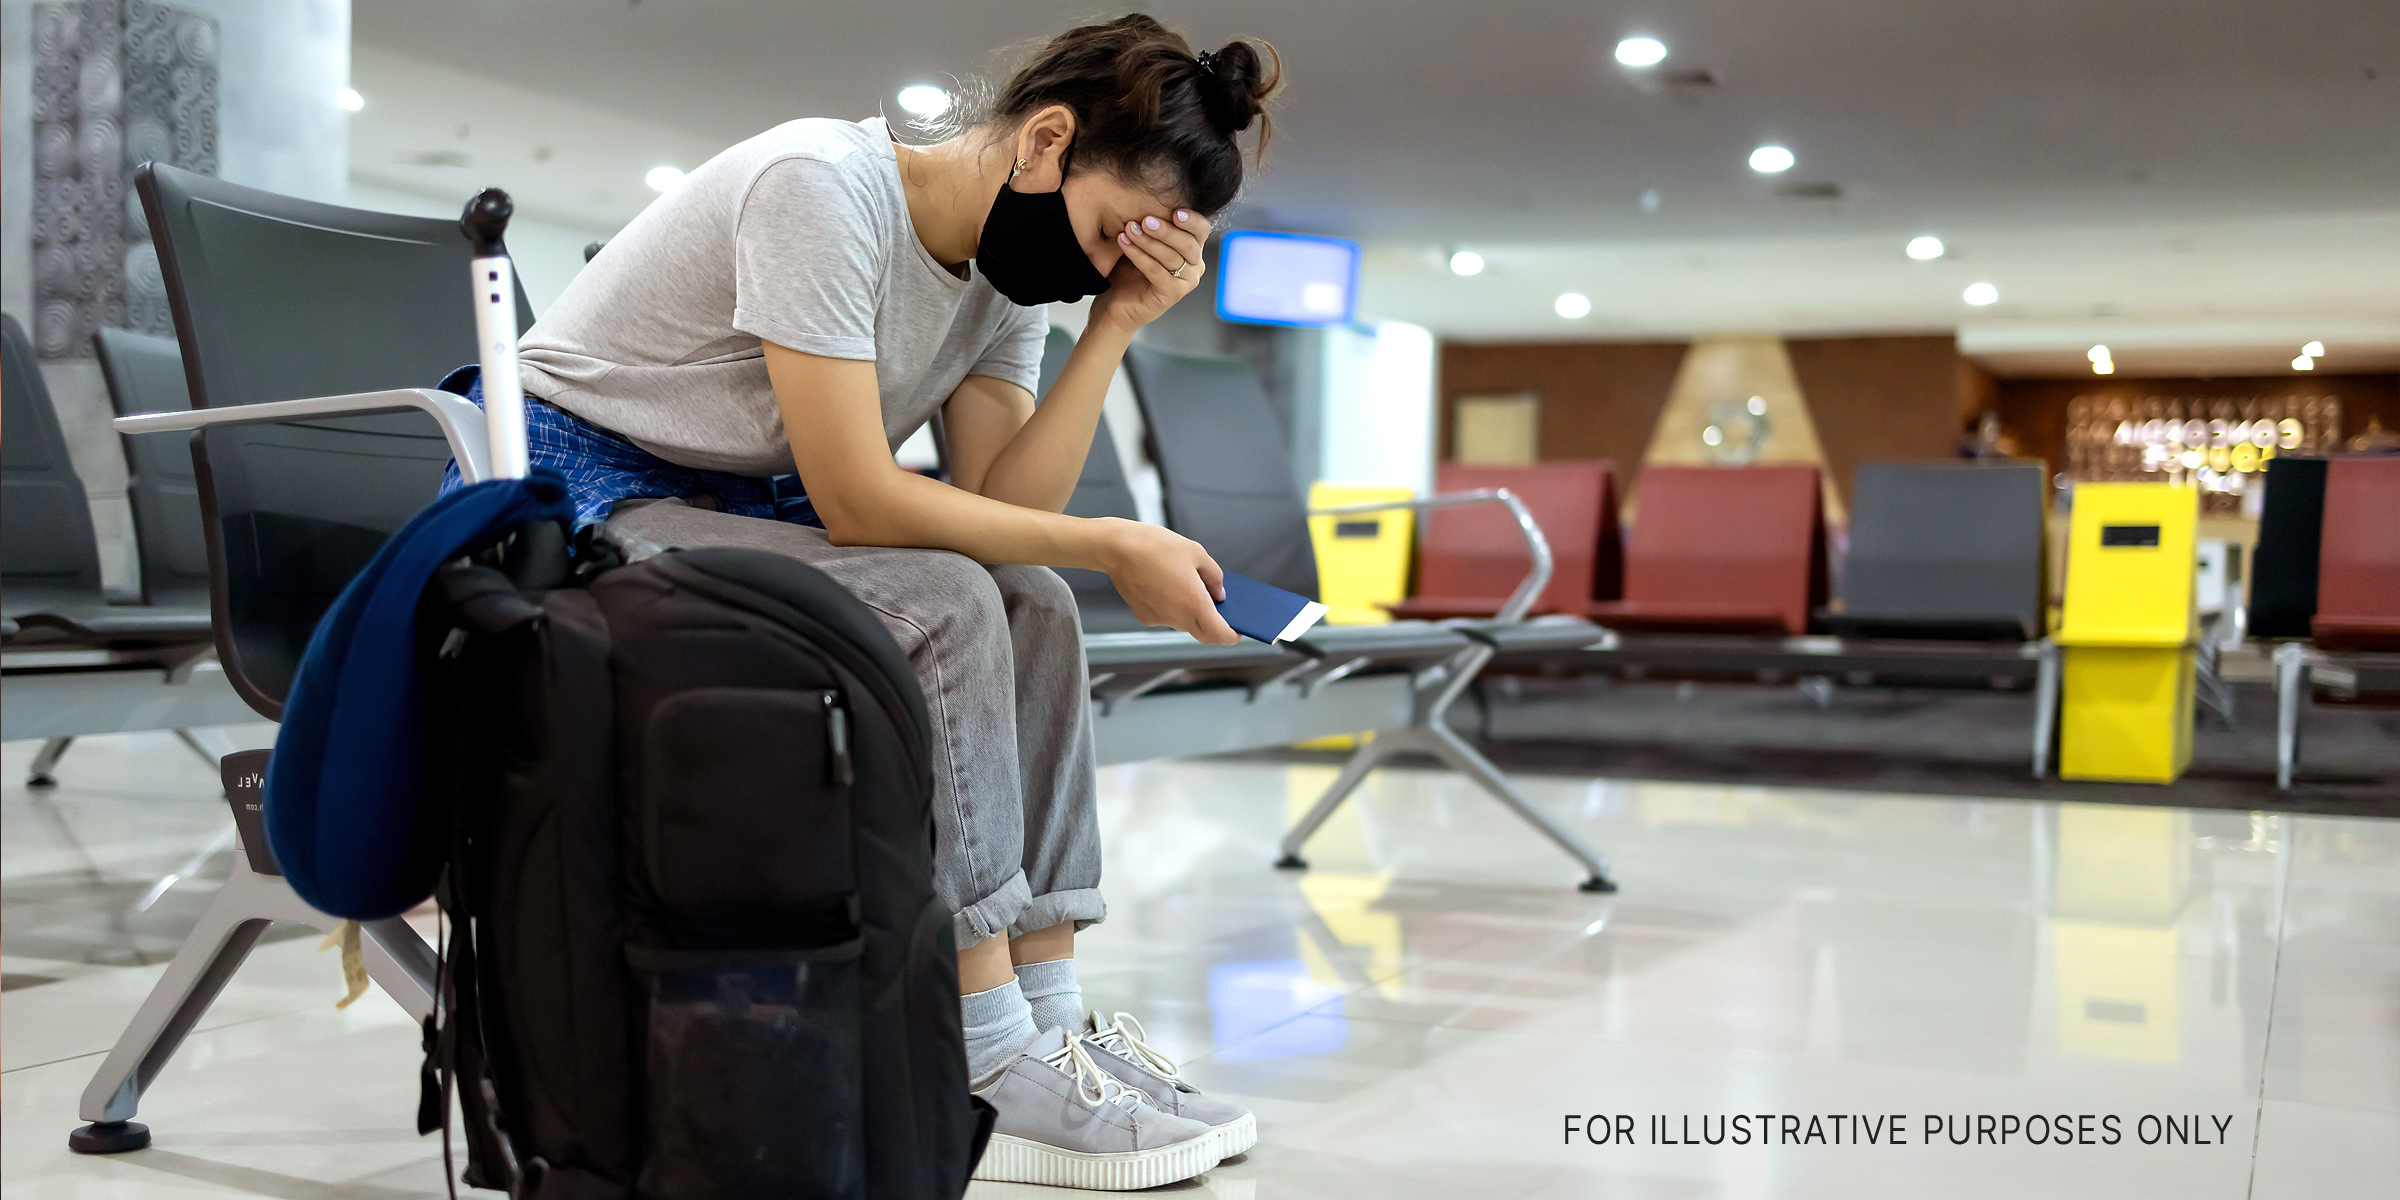 Eine Frau mit ihrem Gepäck. | Quelle: Shutterstock